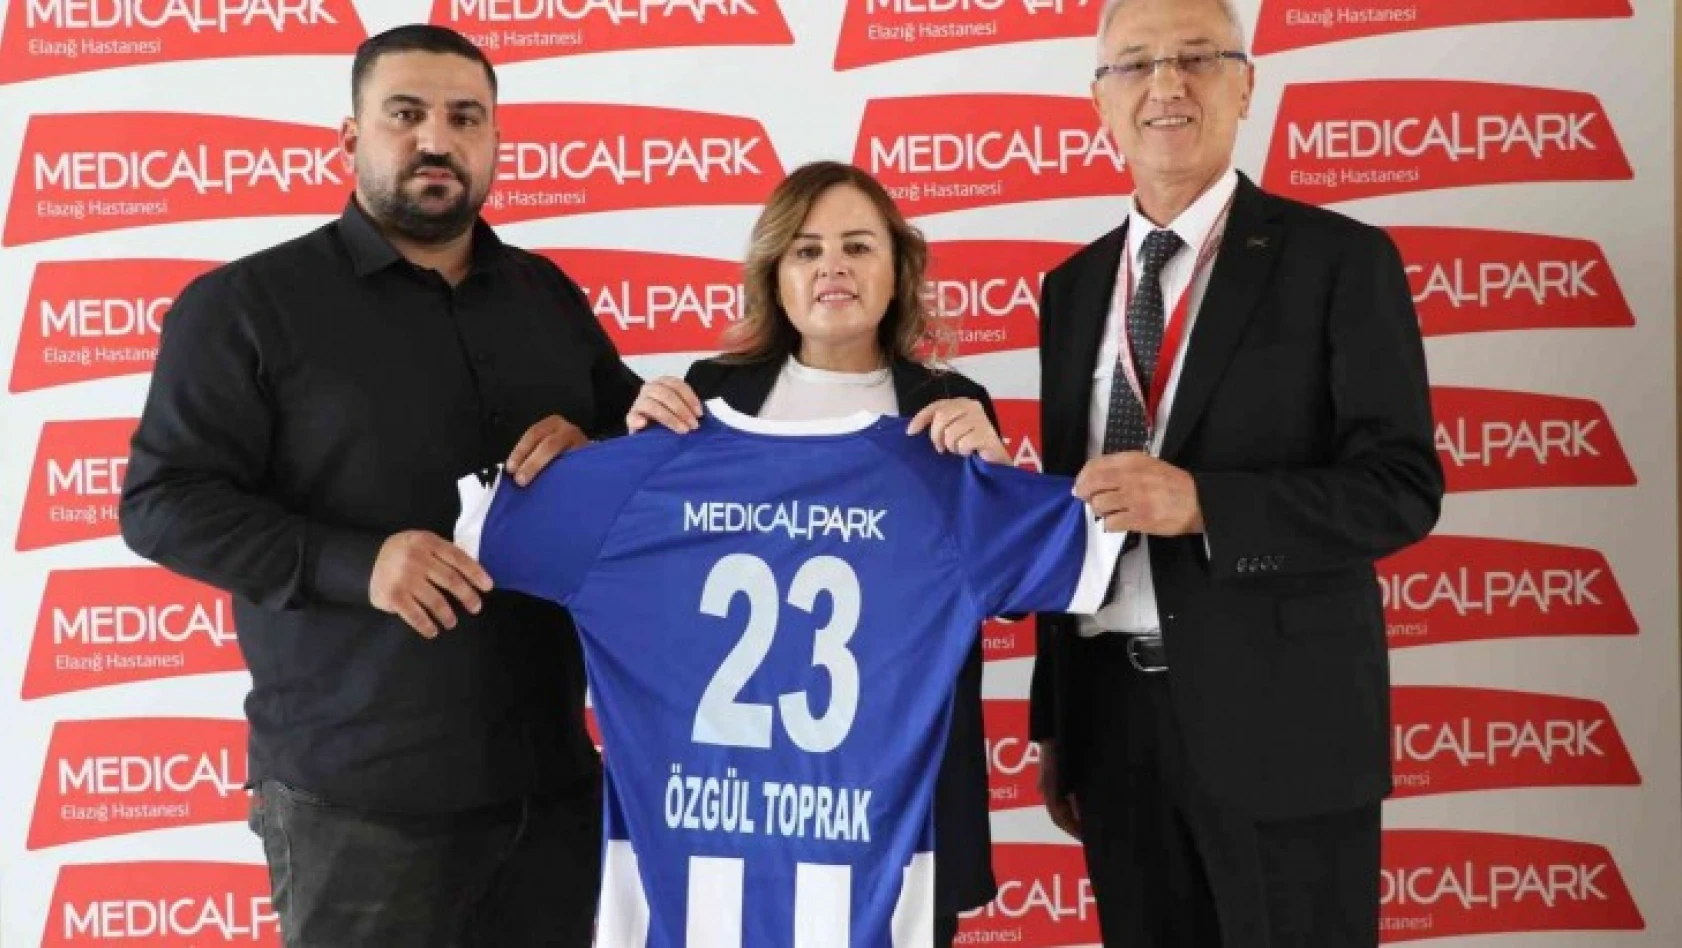 Medical Park Elazığ Hastanesi, Elazığ Karakoçan FK'nın sağlık sponsorluğu anlaşmasını yeniledi